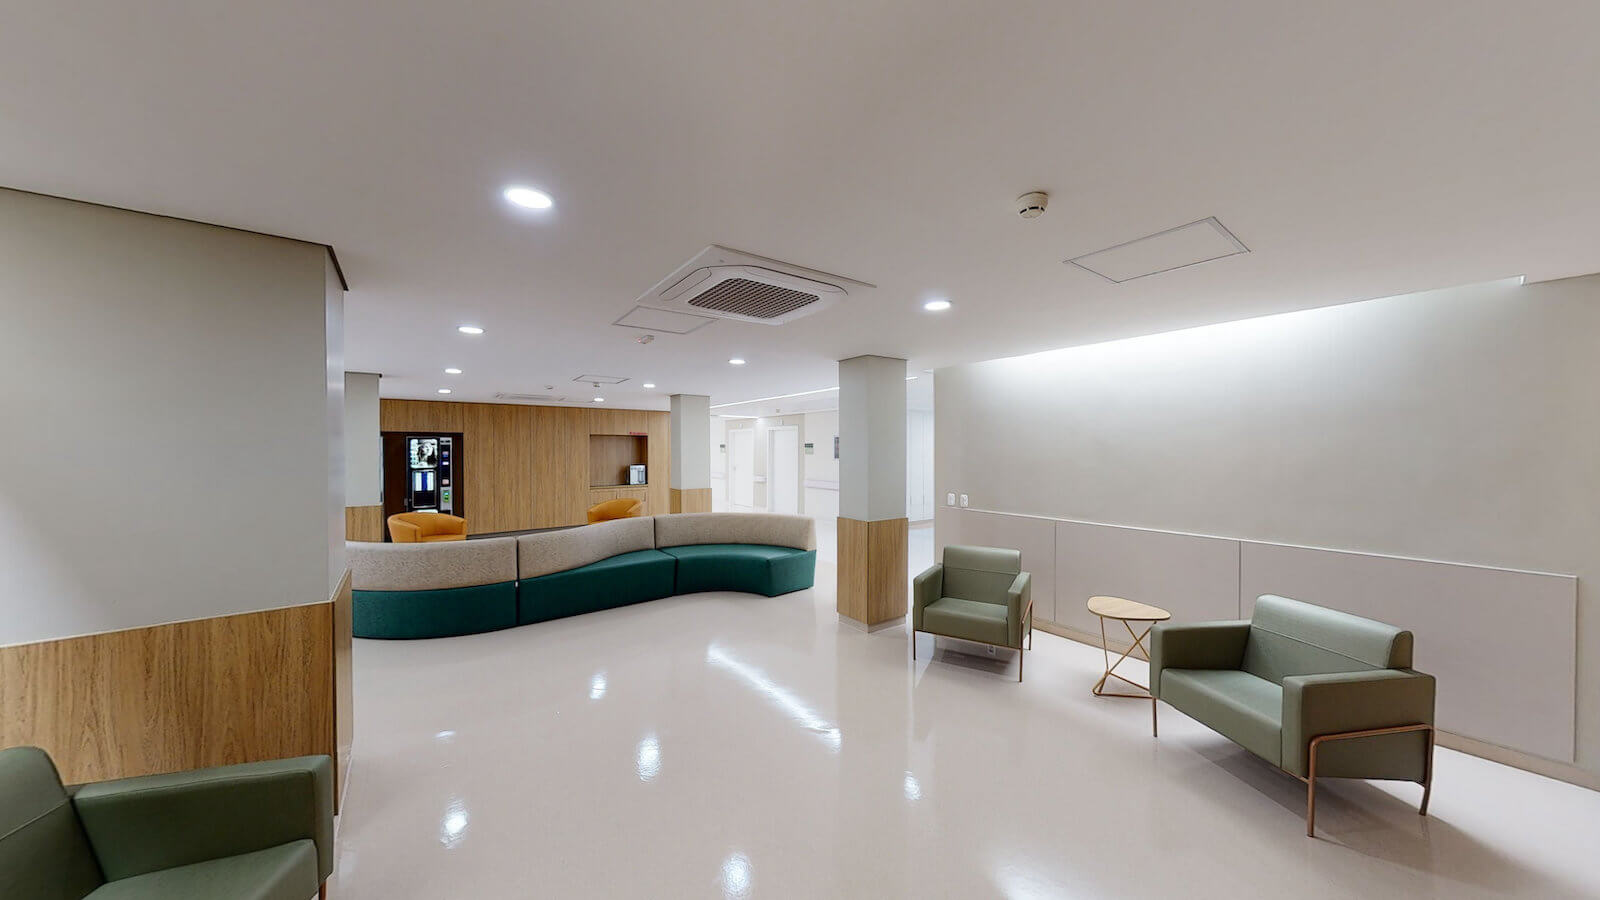 foto profissional sala de espera hospital